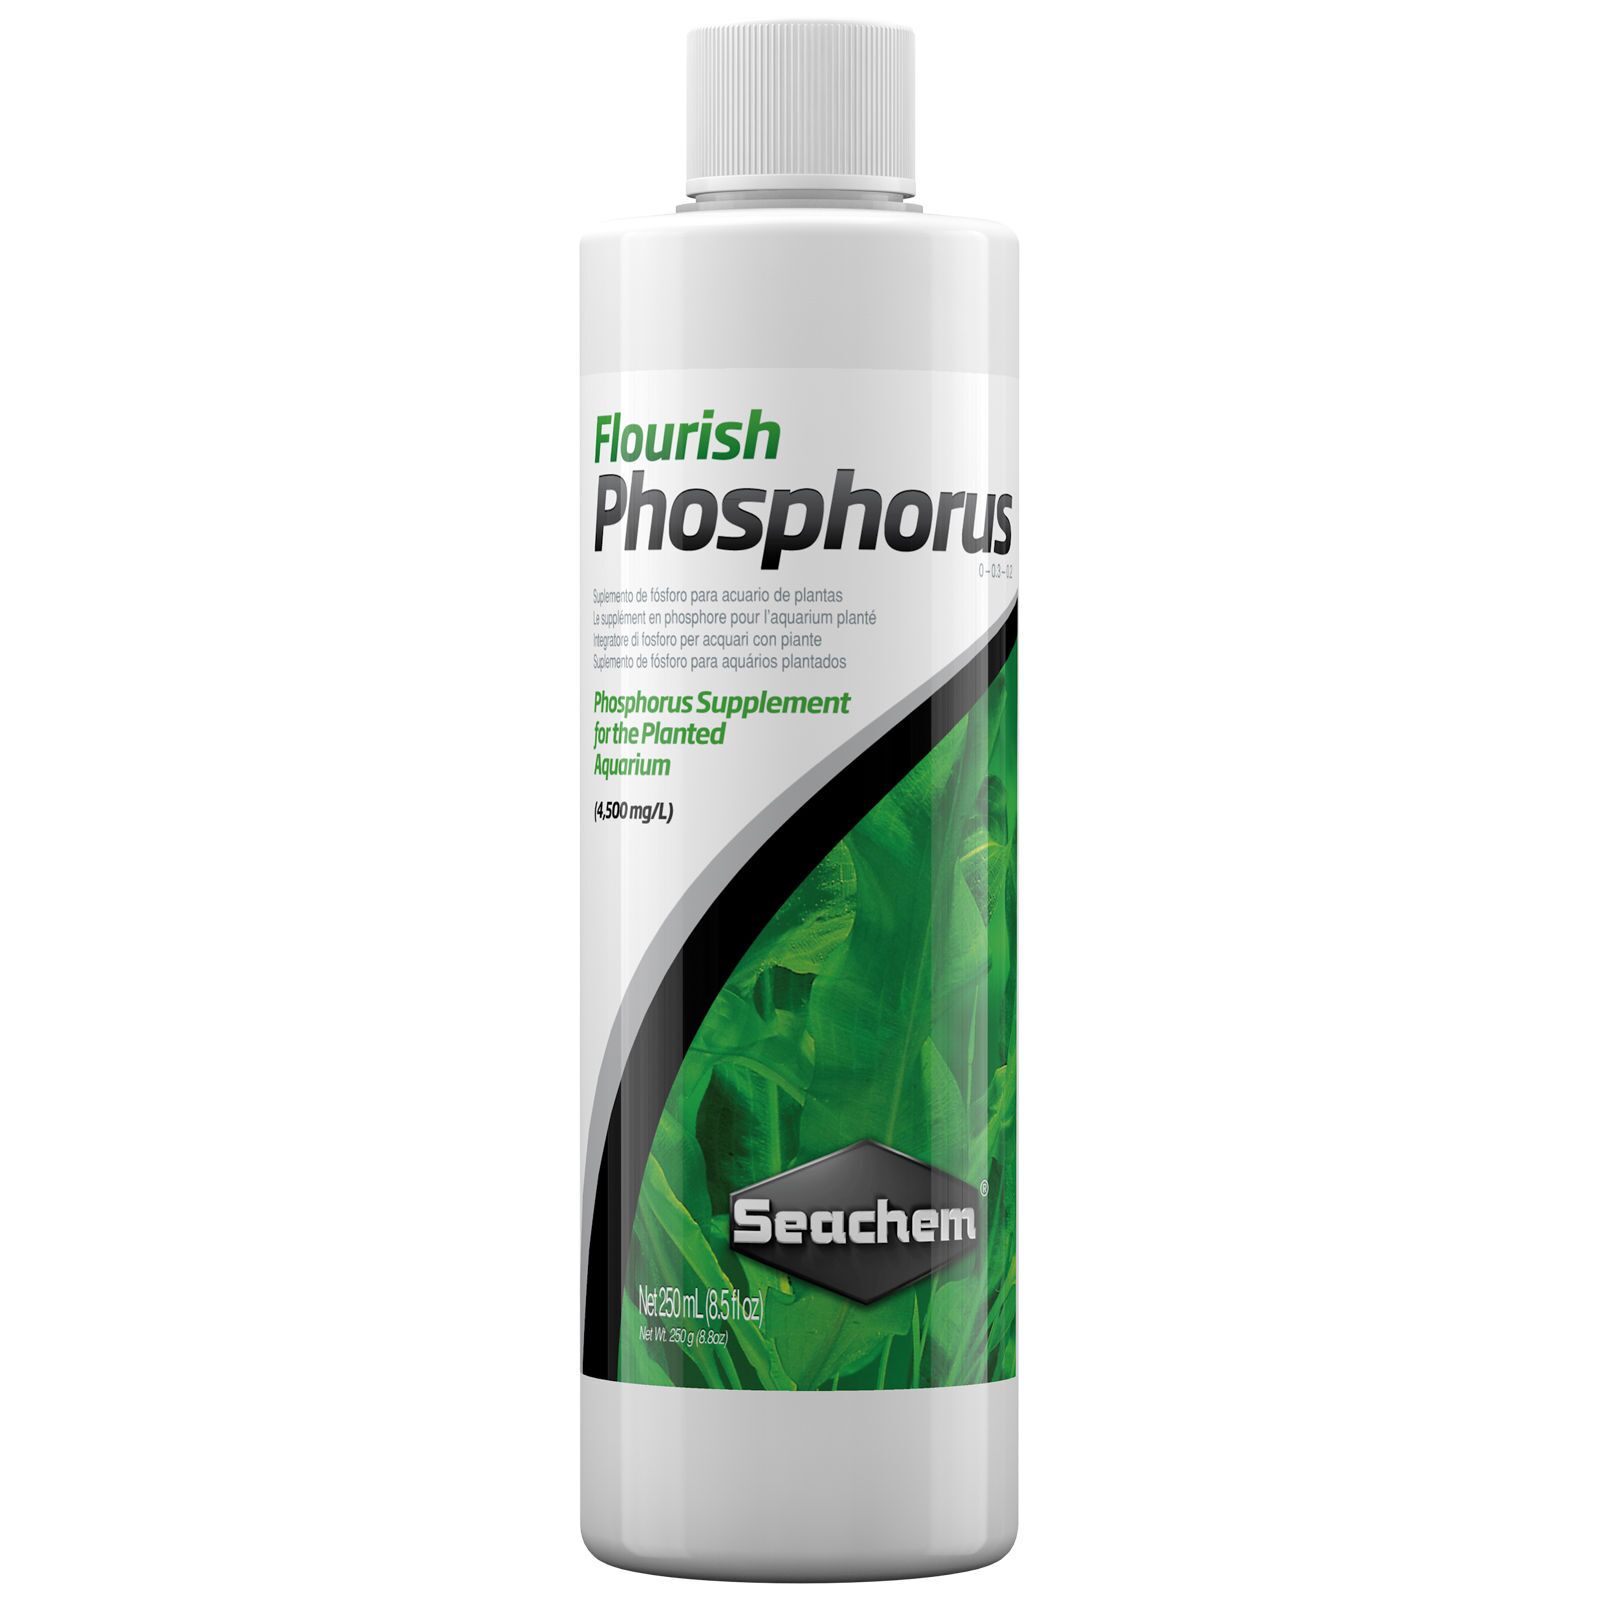 Seachem - Flourish Phosphorus